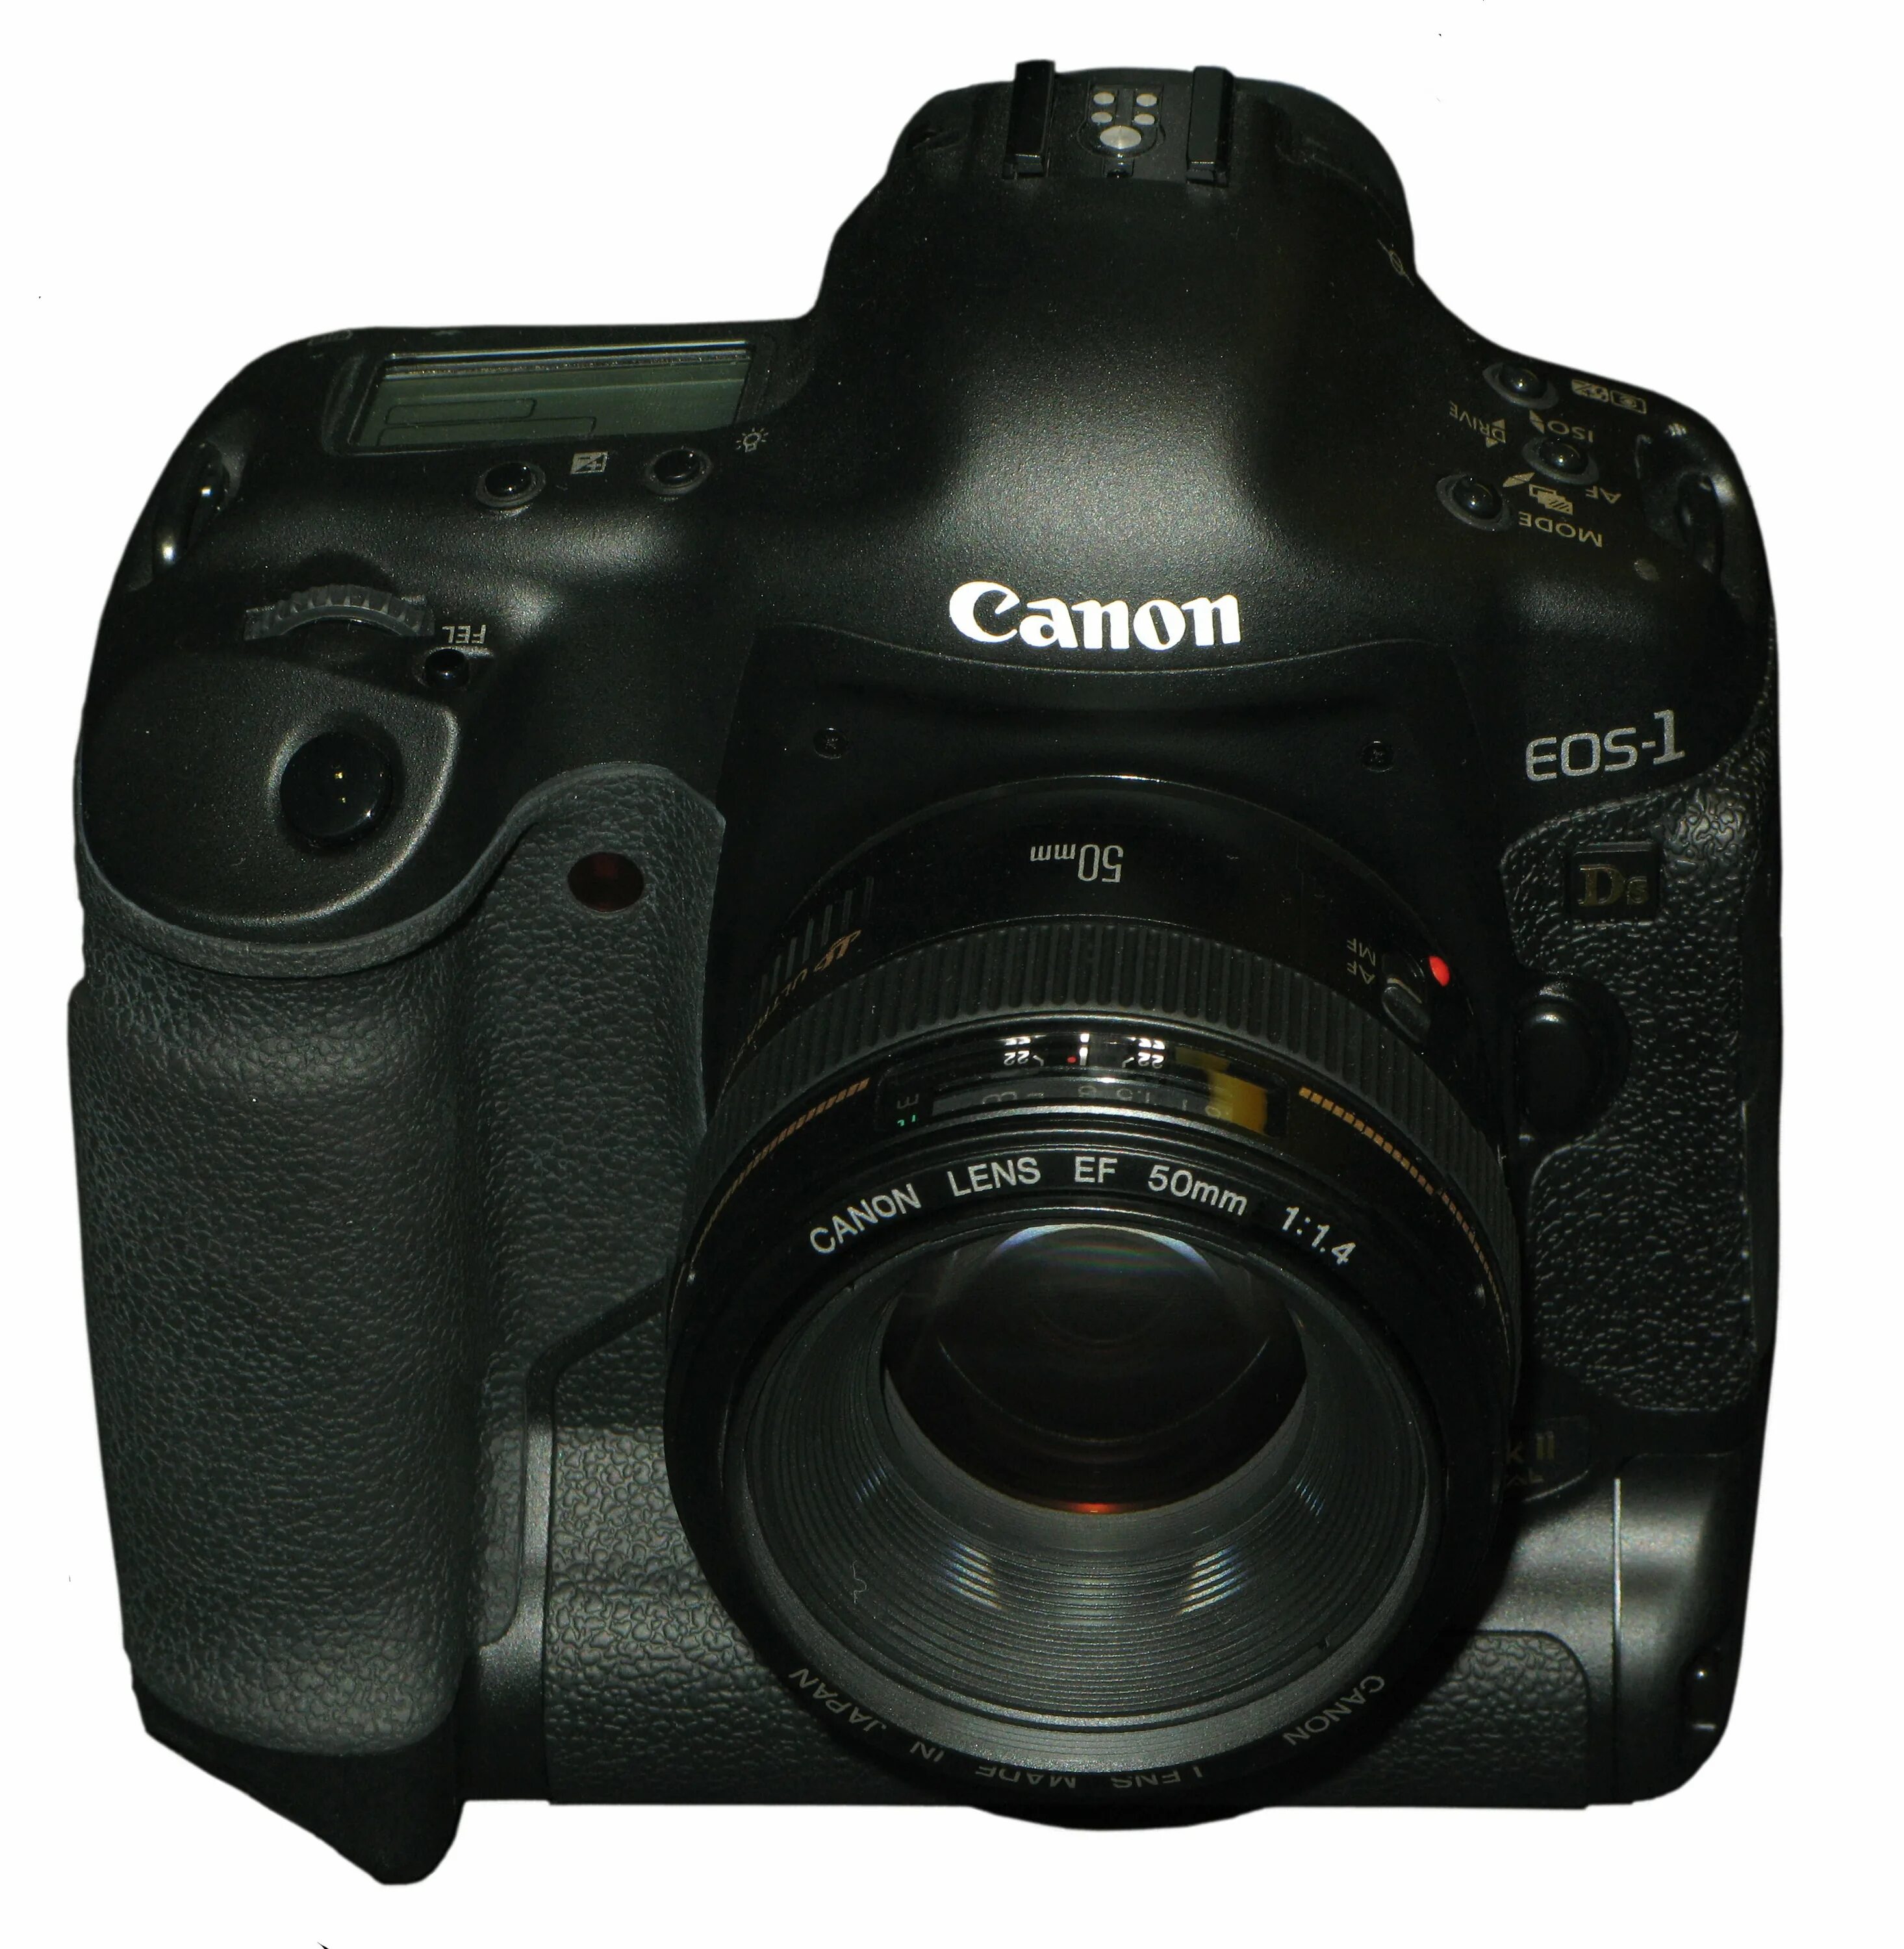 Canon 1ds mark. Canon EOS-1ds. Canon 1ds MKII. Canon 1ds Mark II. Canon 1ds mk2.